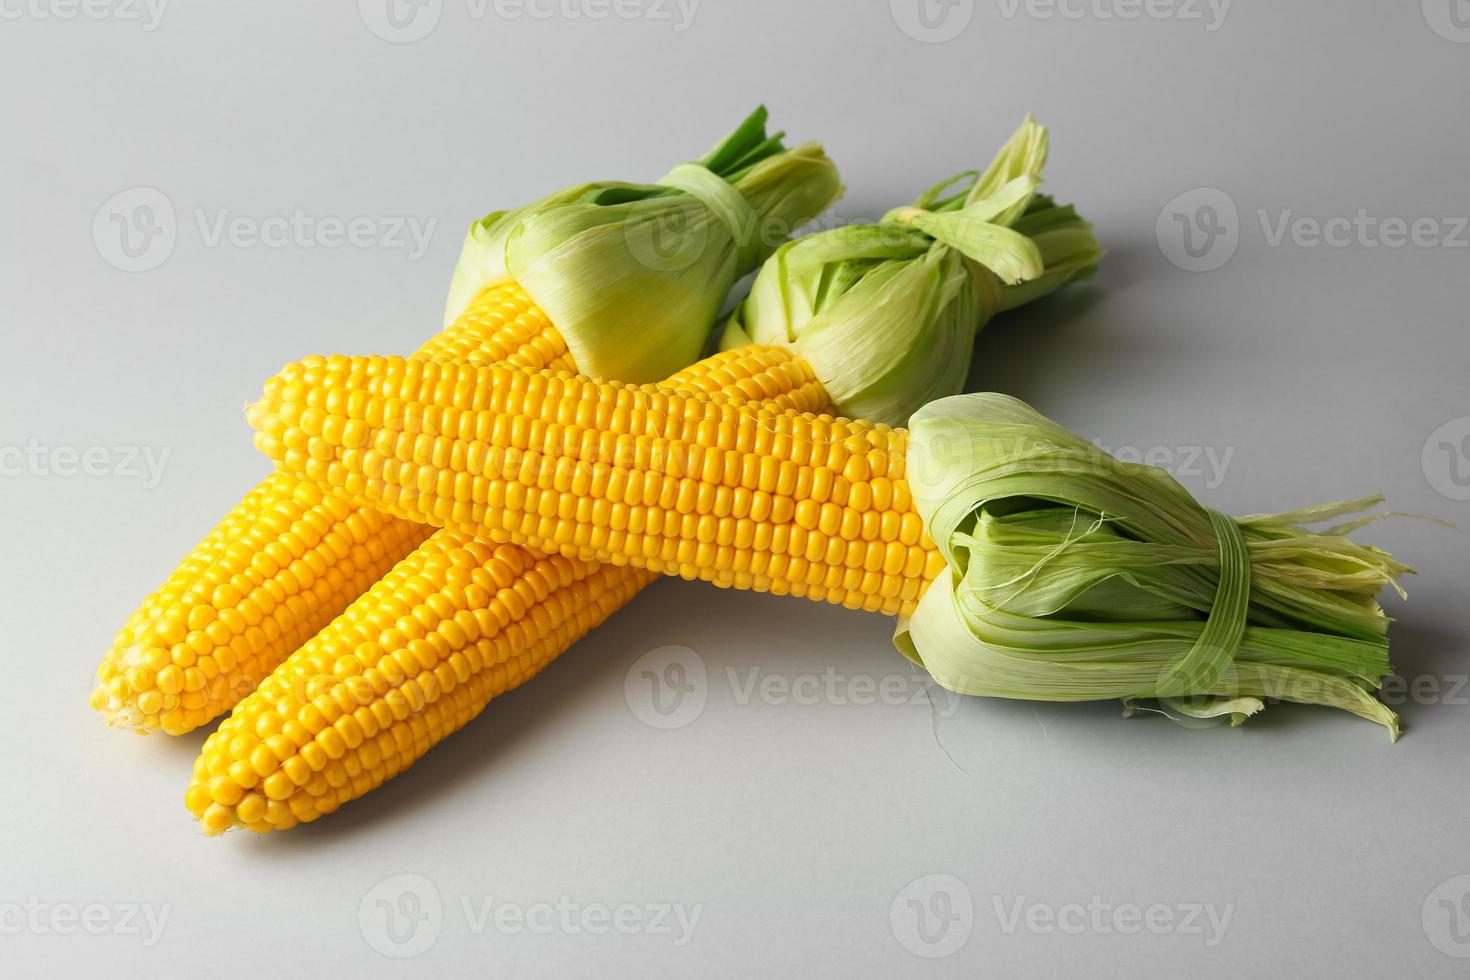 mazorcas de maíz frescas sobre fondo claro foto